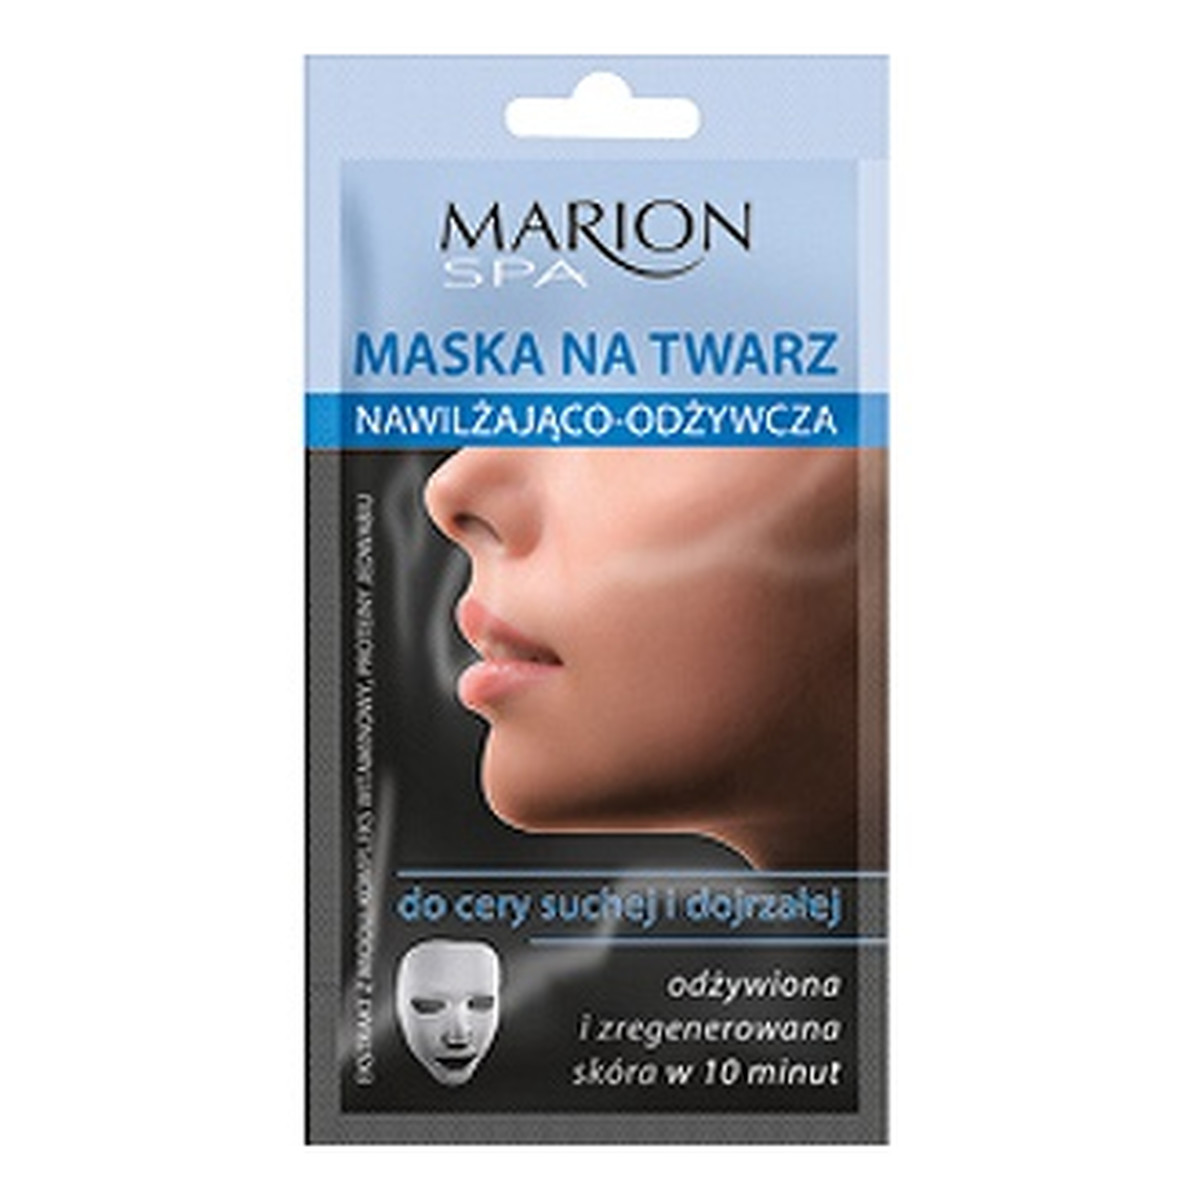 Marion Spa Maska Na Twarz Nawilżająco Odżywcza 15ml